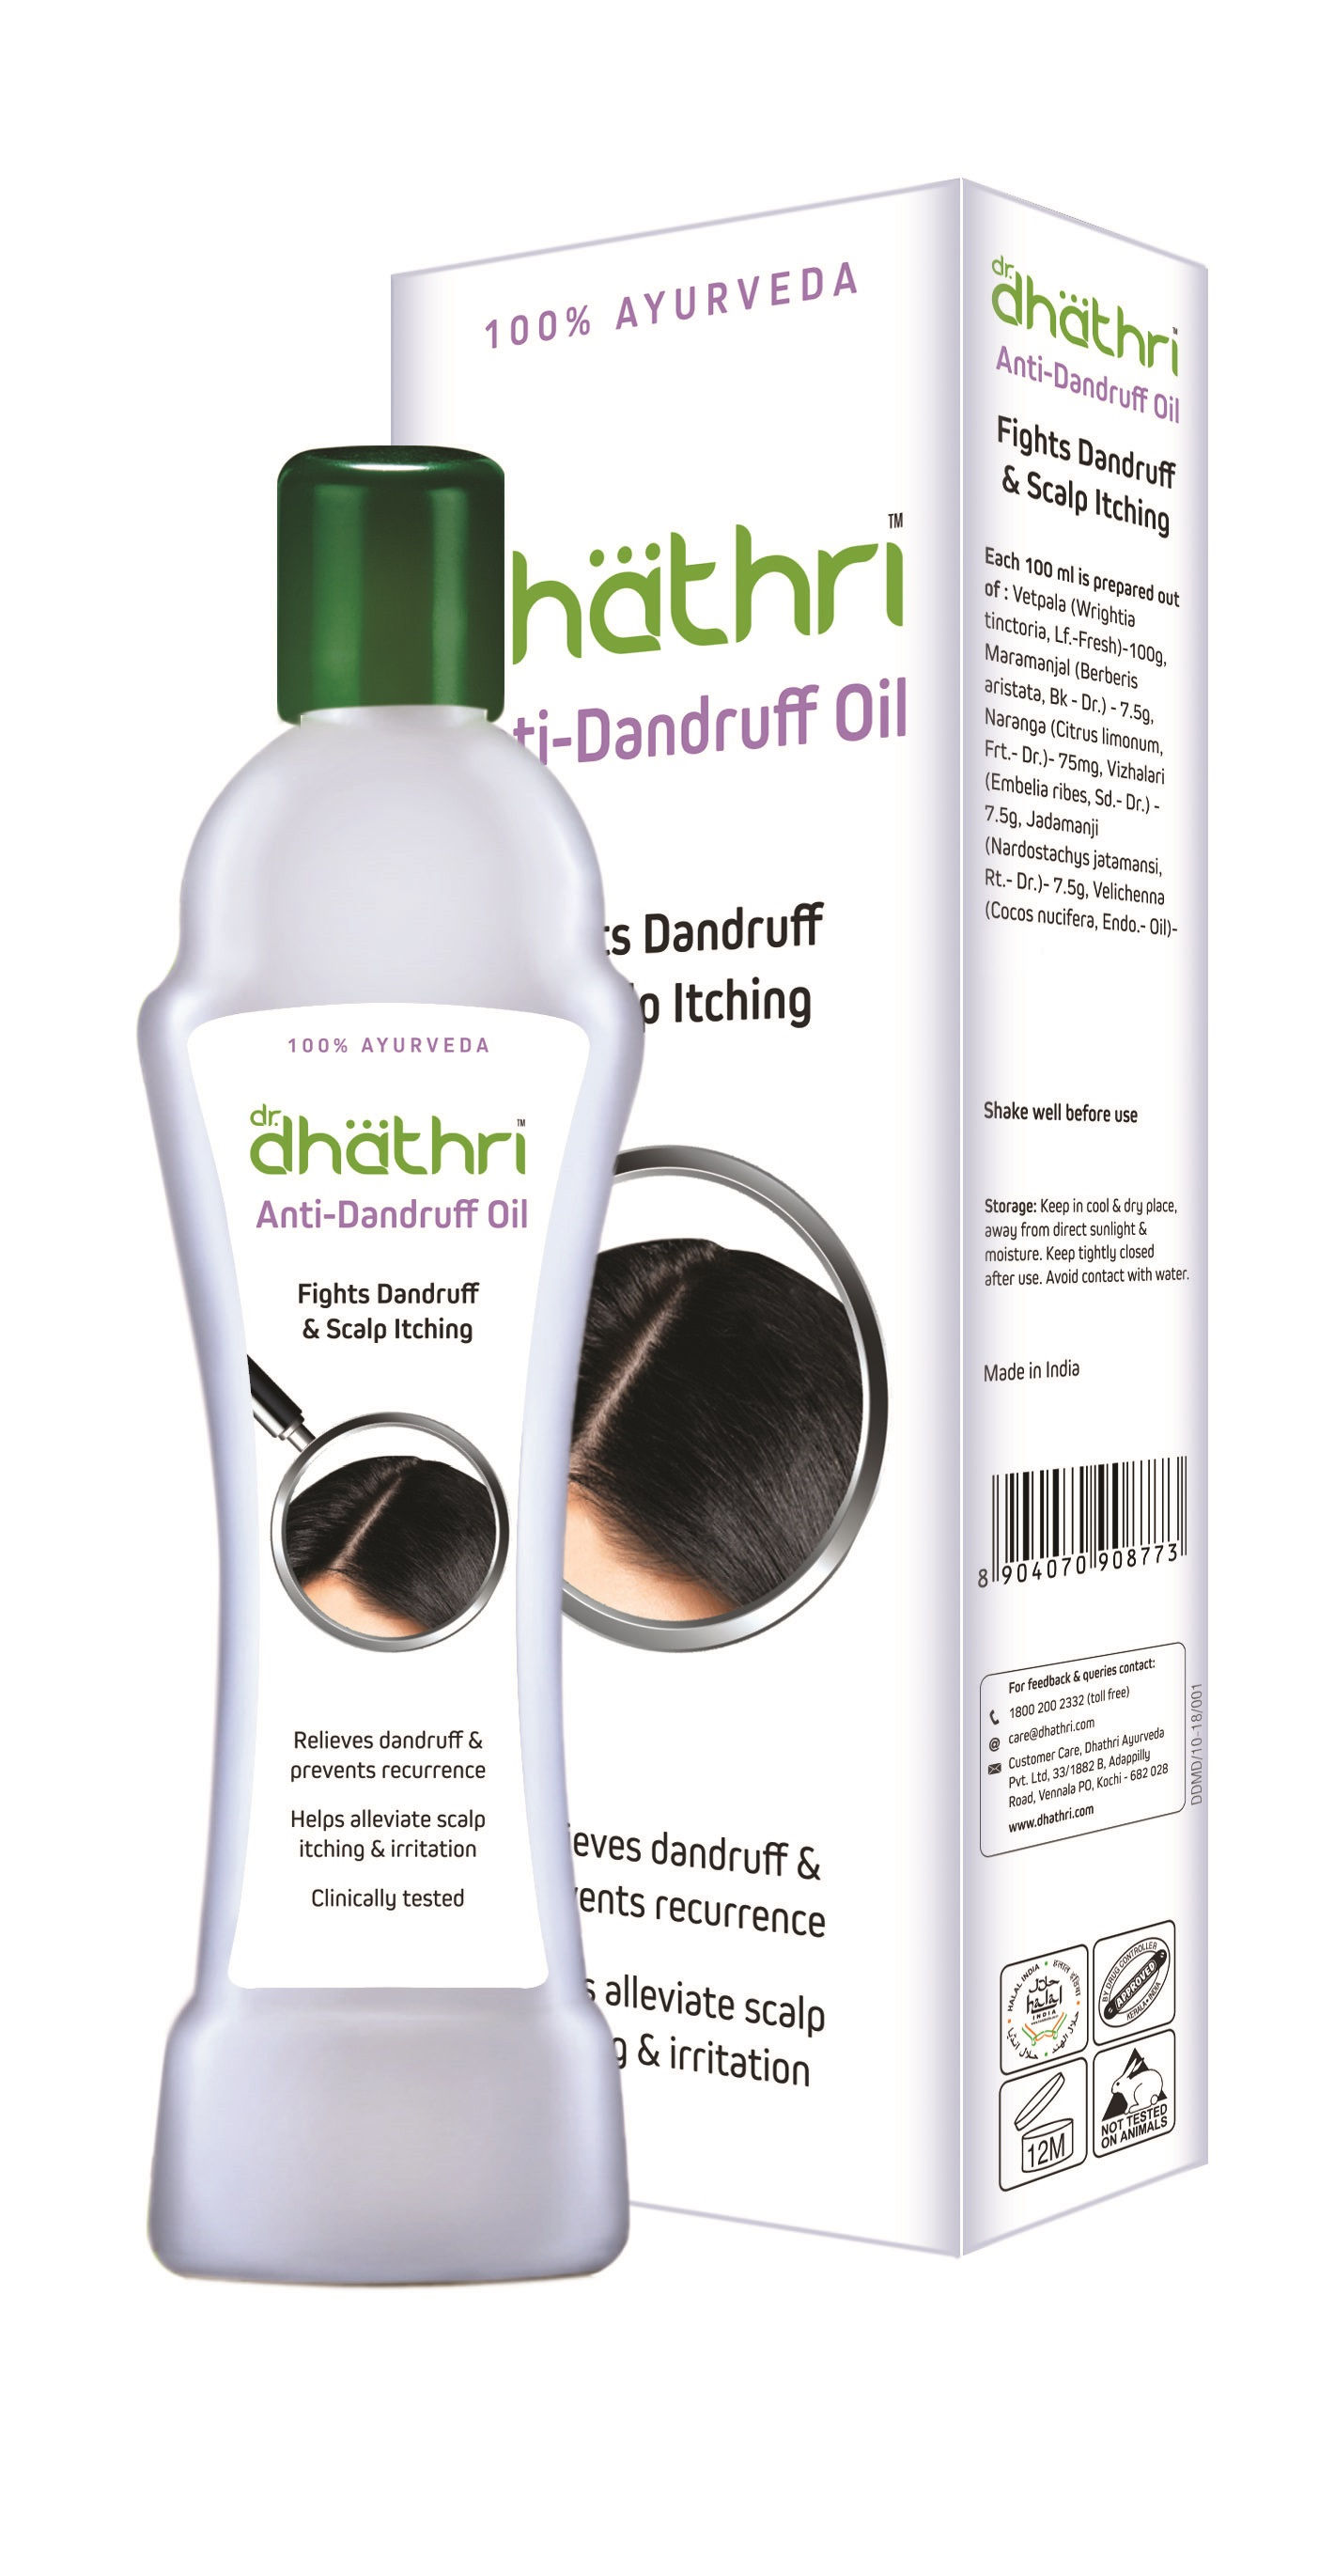 Buy Dhathri Ayurveda Hair Care Herbal Oil Online at Best Price  Distacart